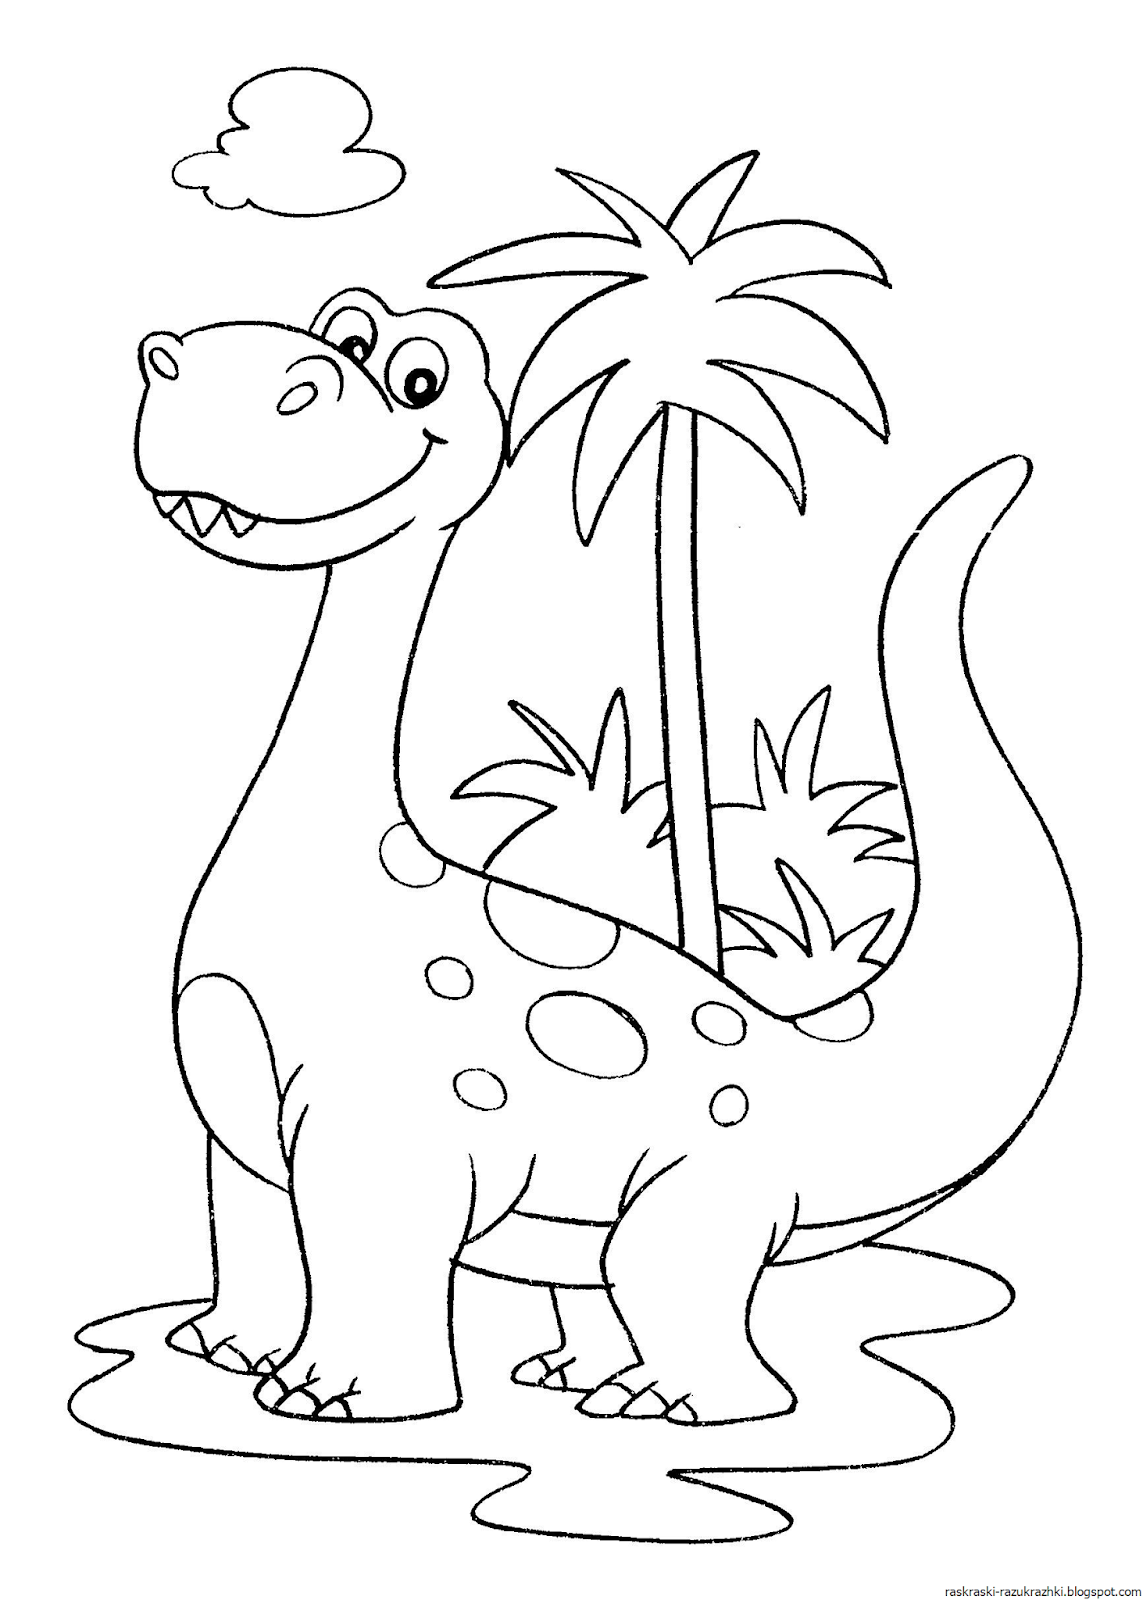 Динозавры для раскрашивания. Динозавры / раскраска. Динозавр раскраска для детей. Динозавры для раскрашивания детям. Раскраска дизонавр для детей.